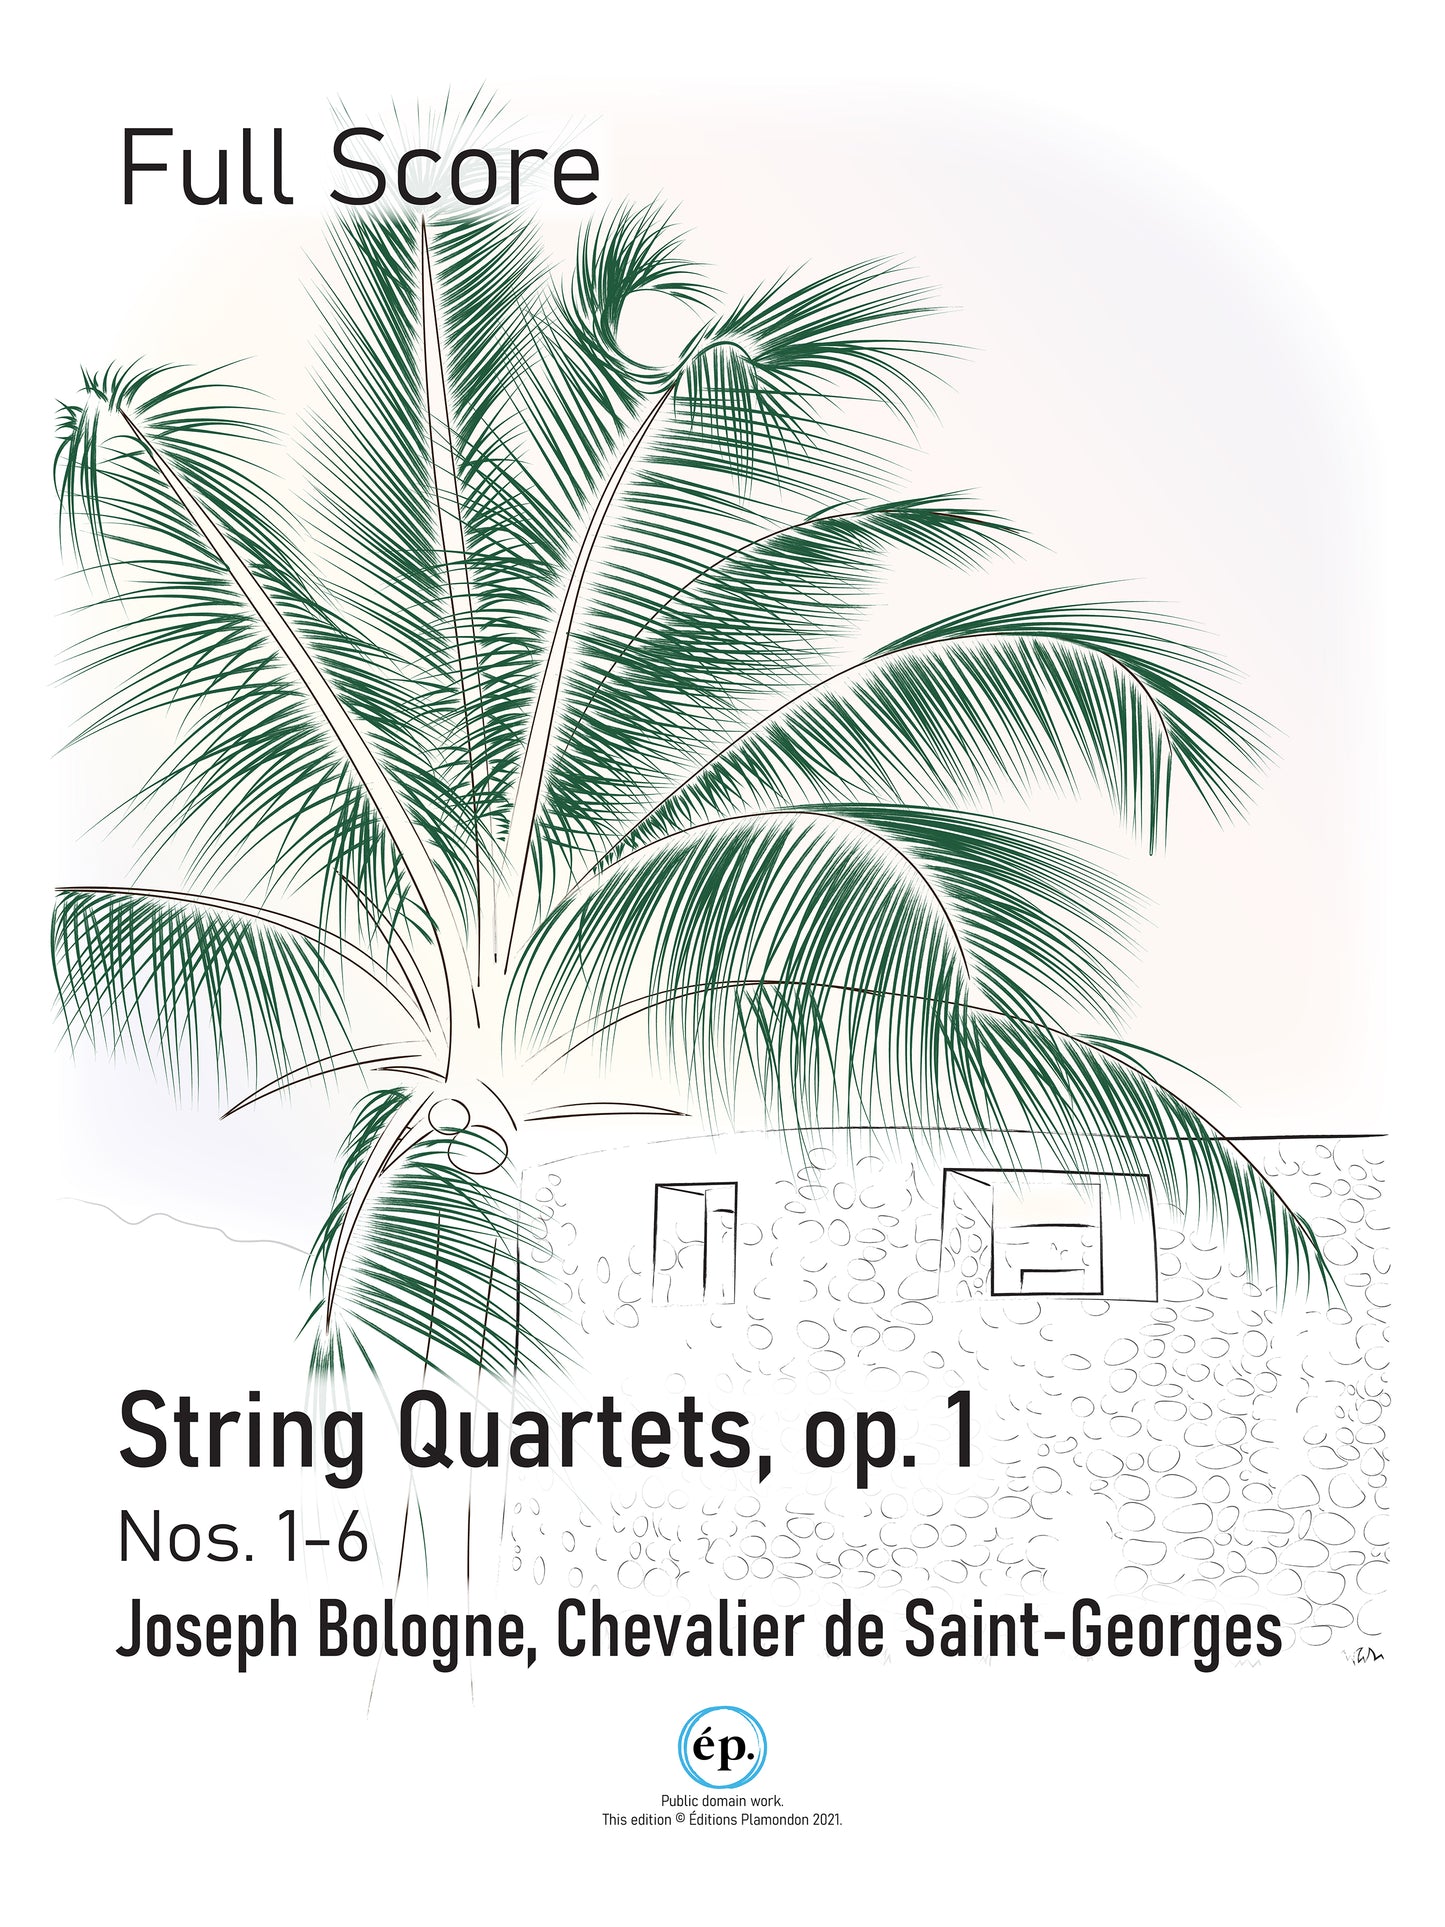 Chevalier de Saint-Georges String Quartets, op. 1